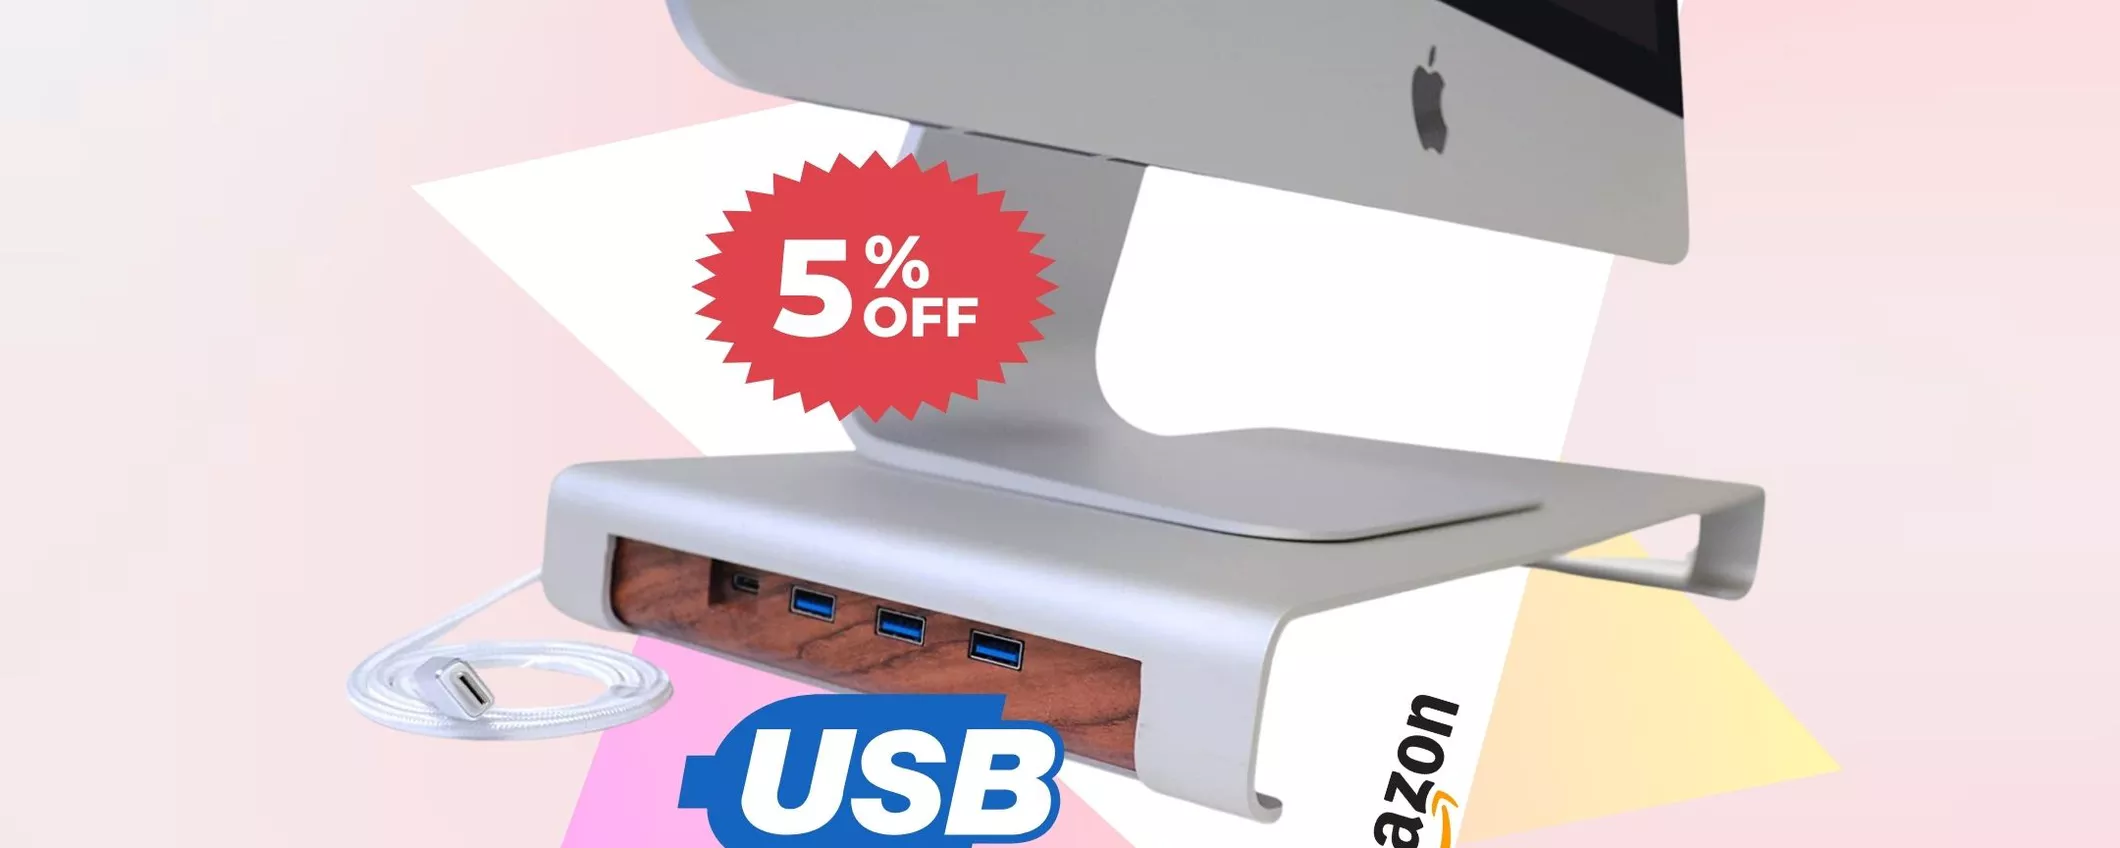 L'UNICO stand per iMac con 4 porte USB incorporate, oggi in sconto!